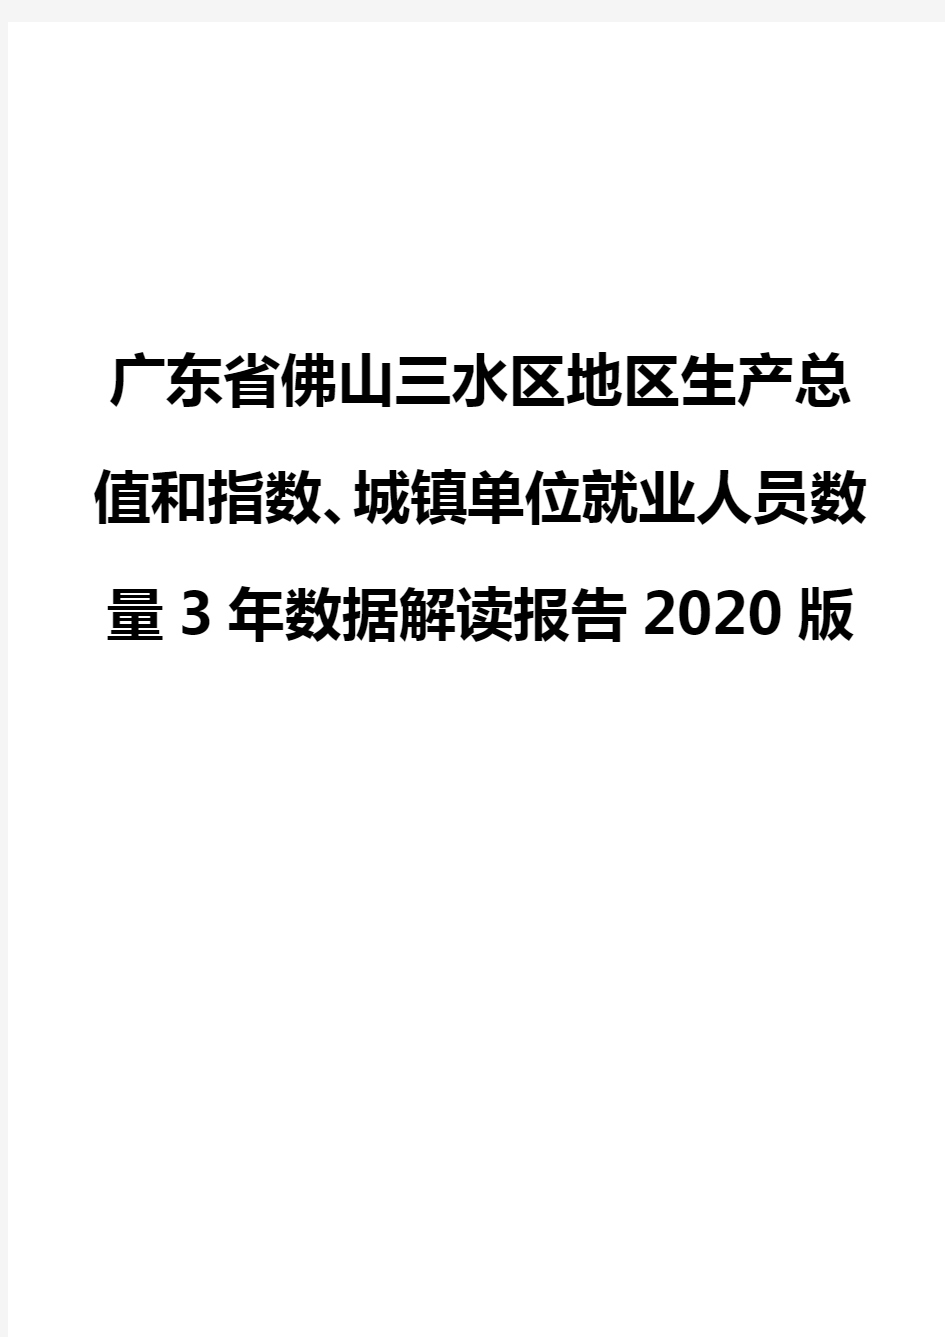 广东省佛山三水区地区生产总值和指数、城镇单位就业人员数量3年数据解读报告2020版